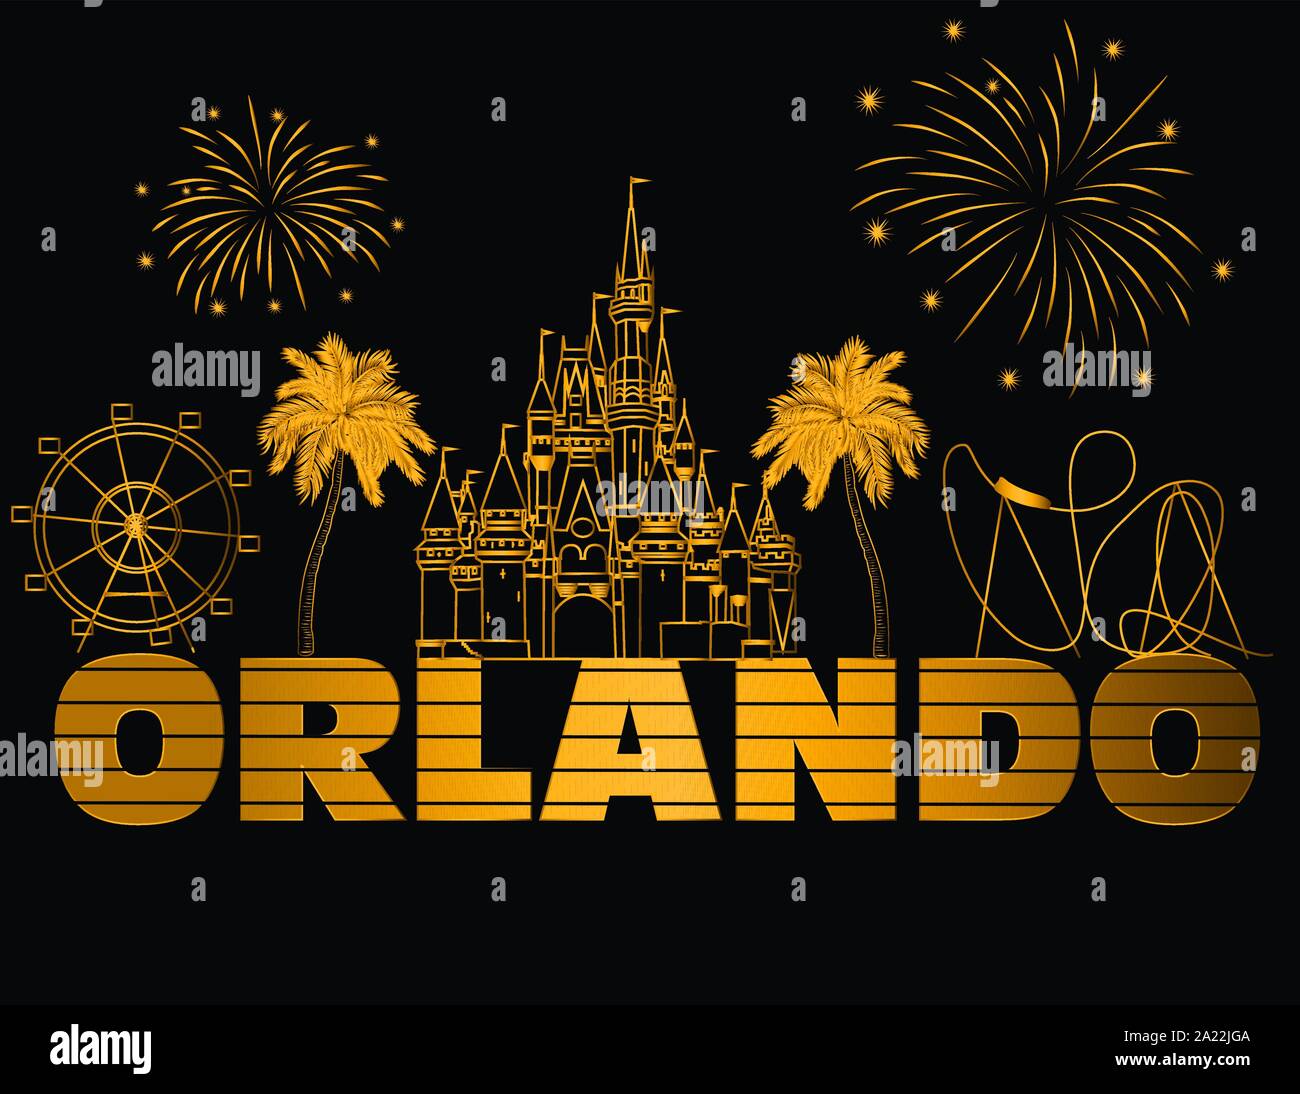 Orlando gold Schriftzug auf schwarzem Hintergrund. Vektor mit Reisen Symbole und Feuerwerk. Reisen Postkarte. Stock Vektor